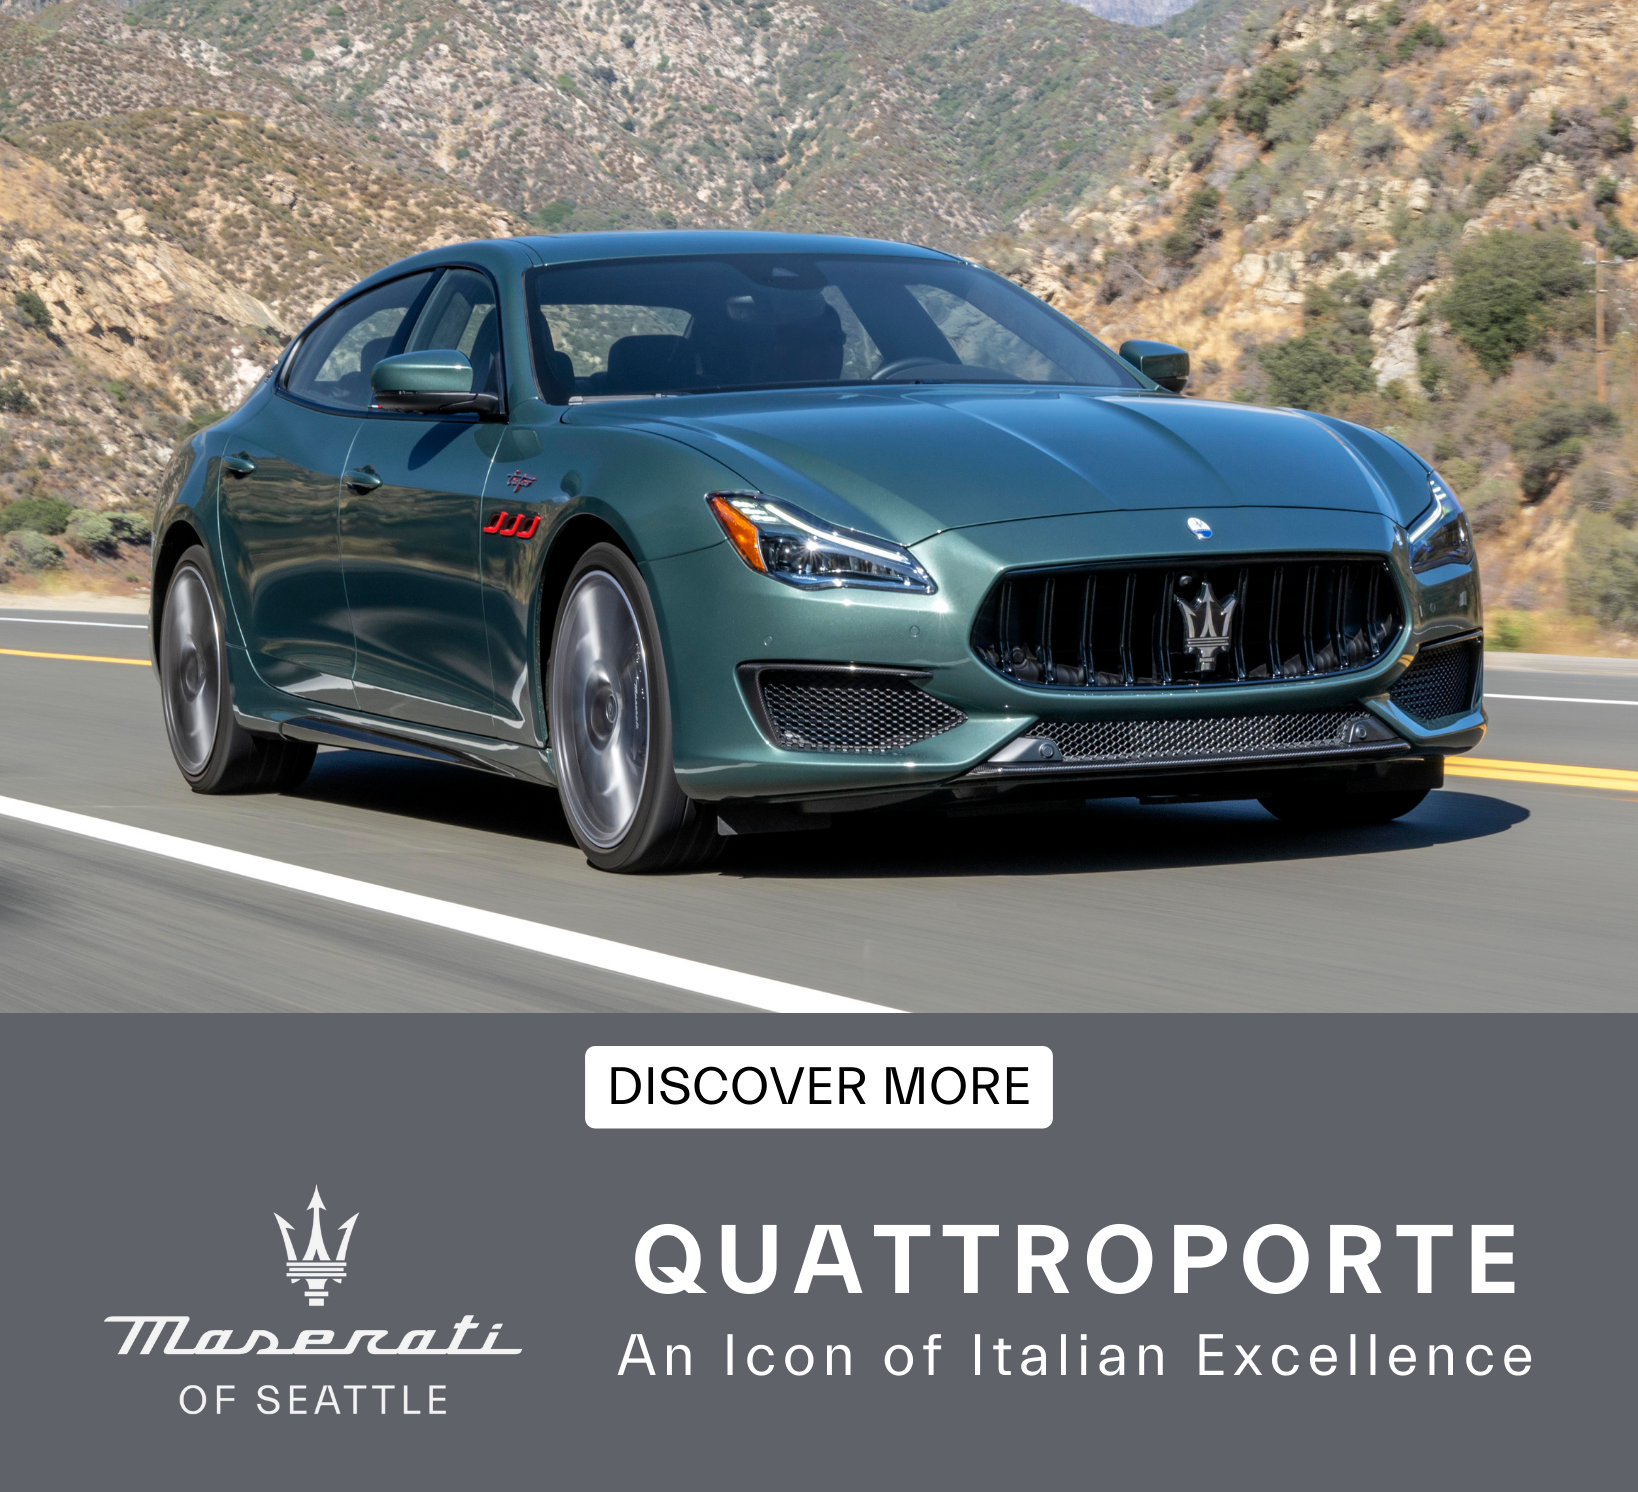 Quattroporte An Icon of Italian Elegance